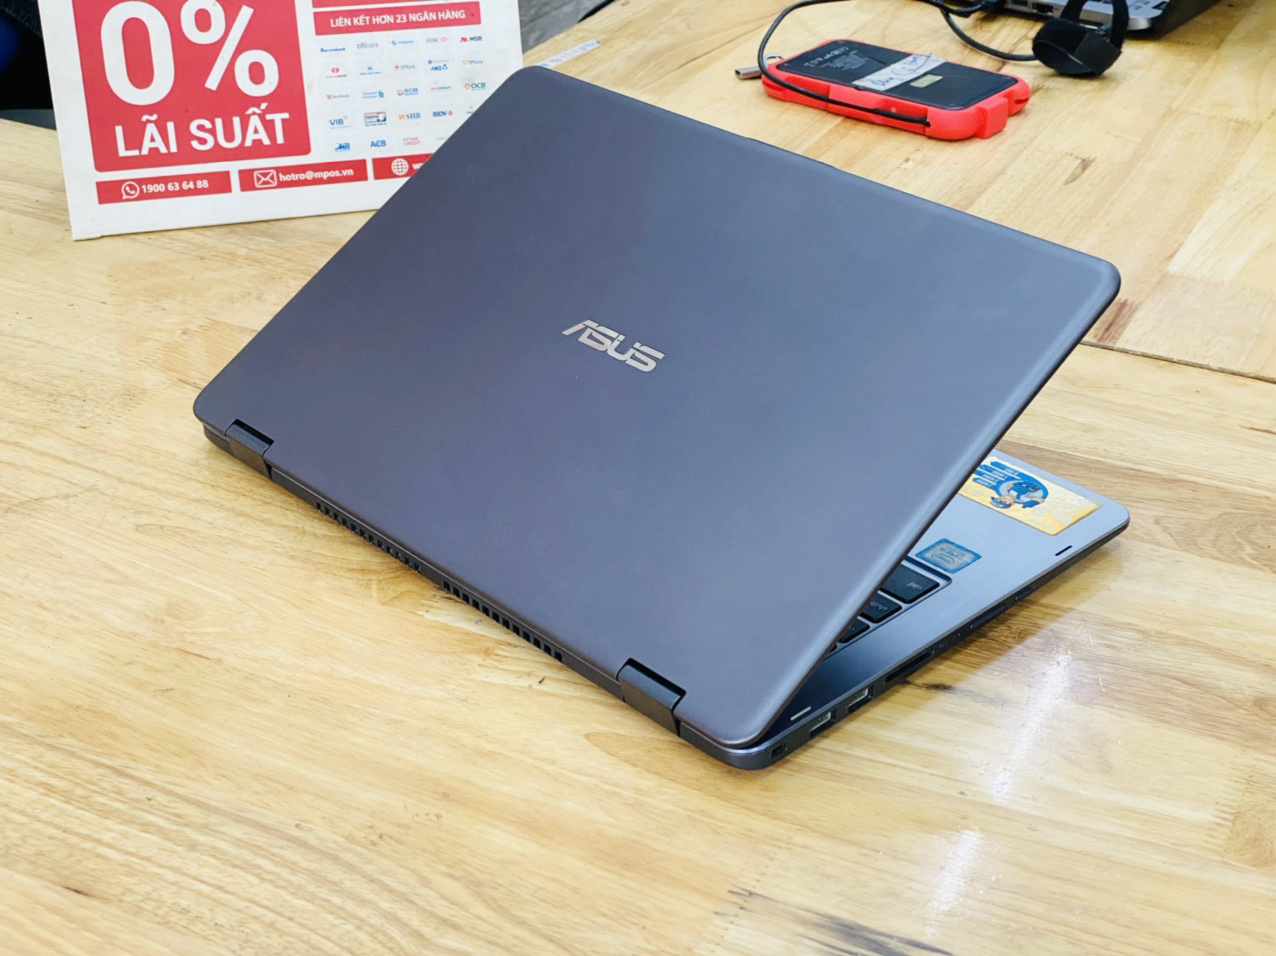 Laptop Asus TP410UA i5-8250U Ram 8G SSD 128G + HDD 500G 14 inch Cảm Ứng Xoay 360 Độ Like New